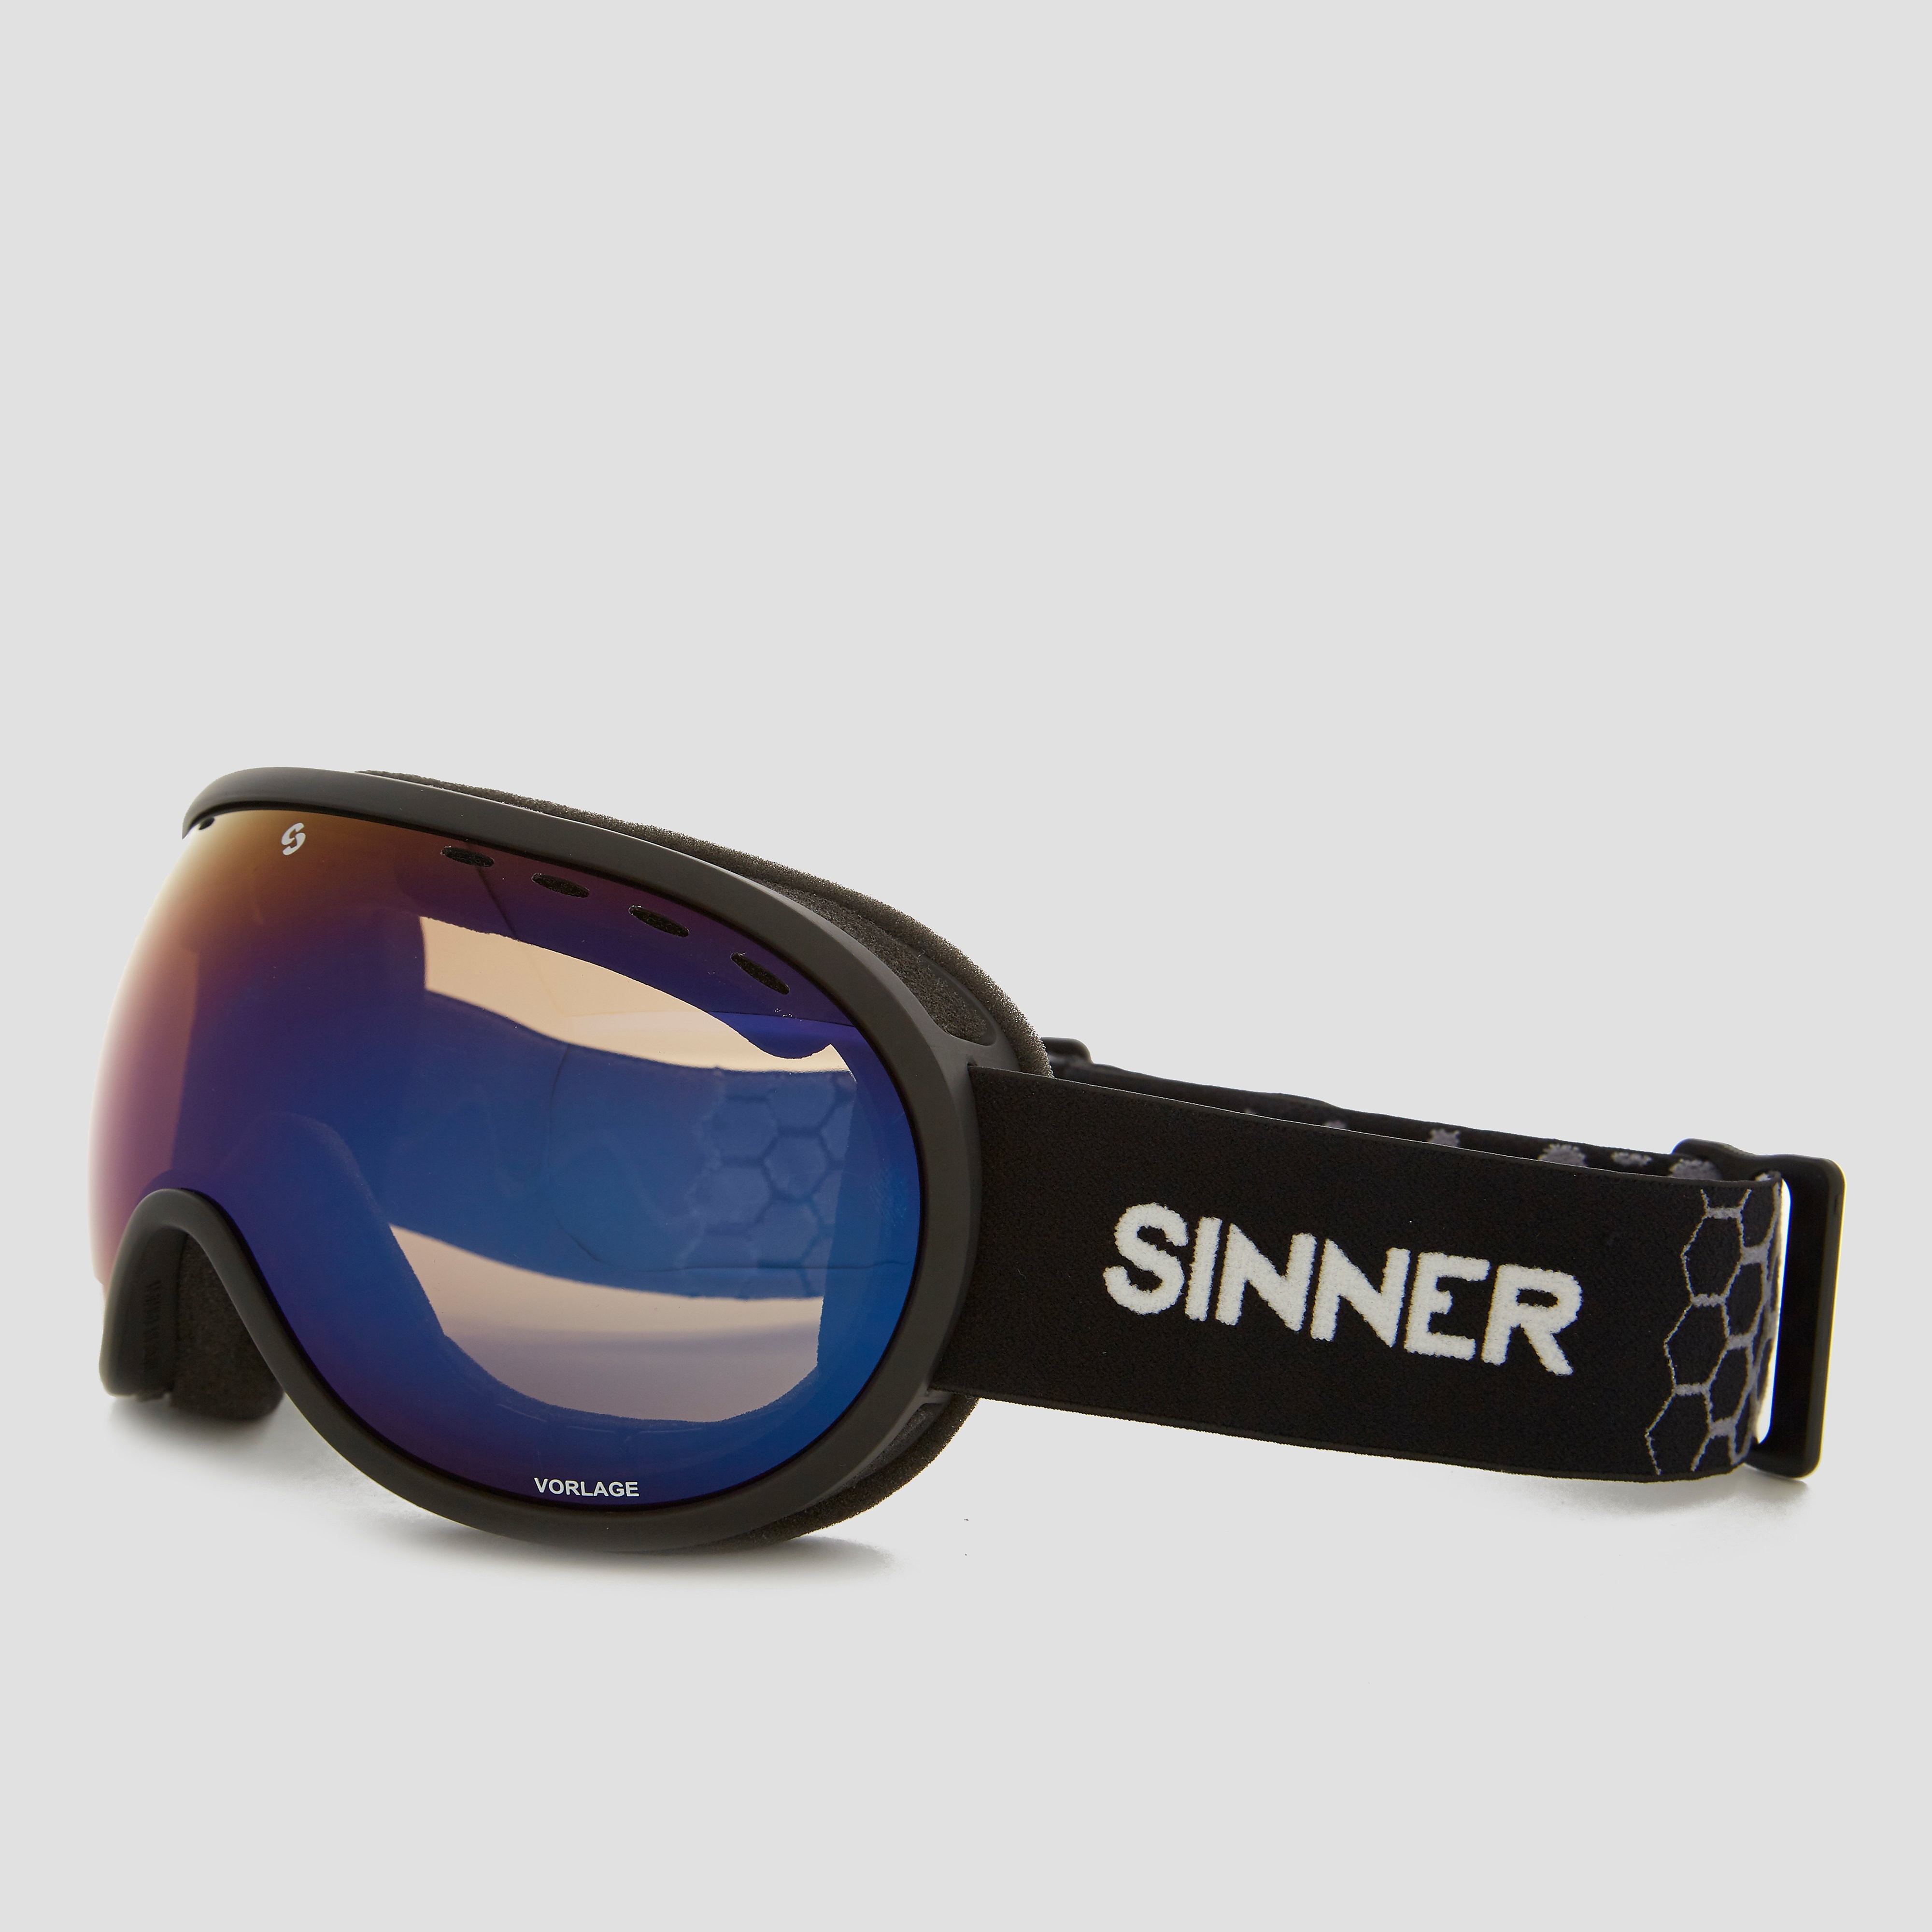 Sinner sinner vorlage skibril zwart/blauw